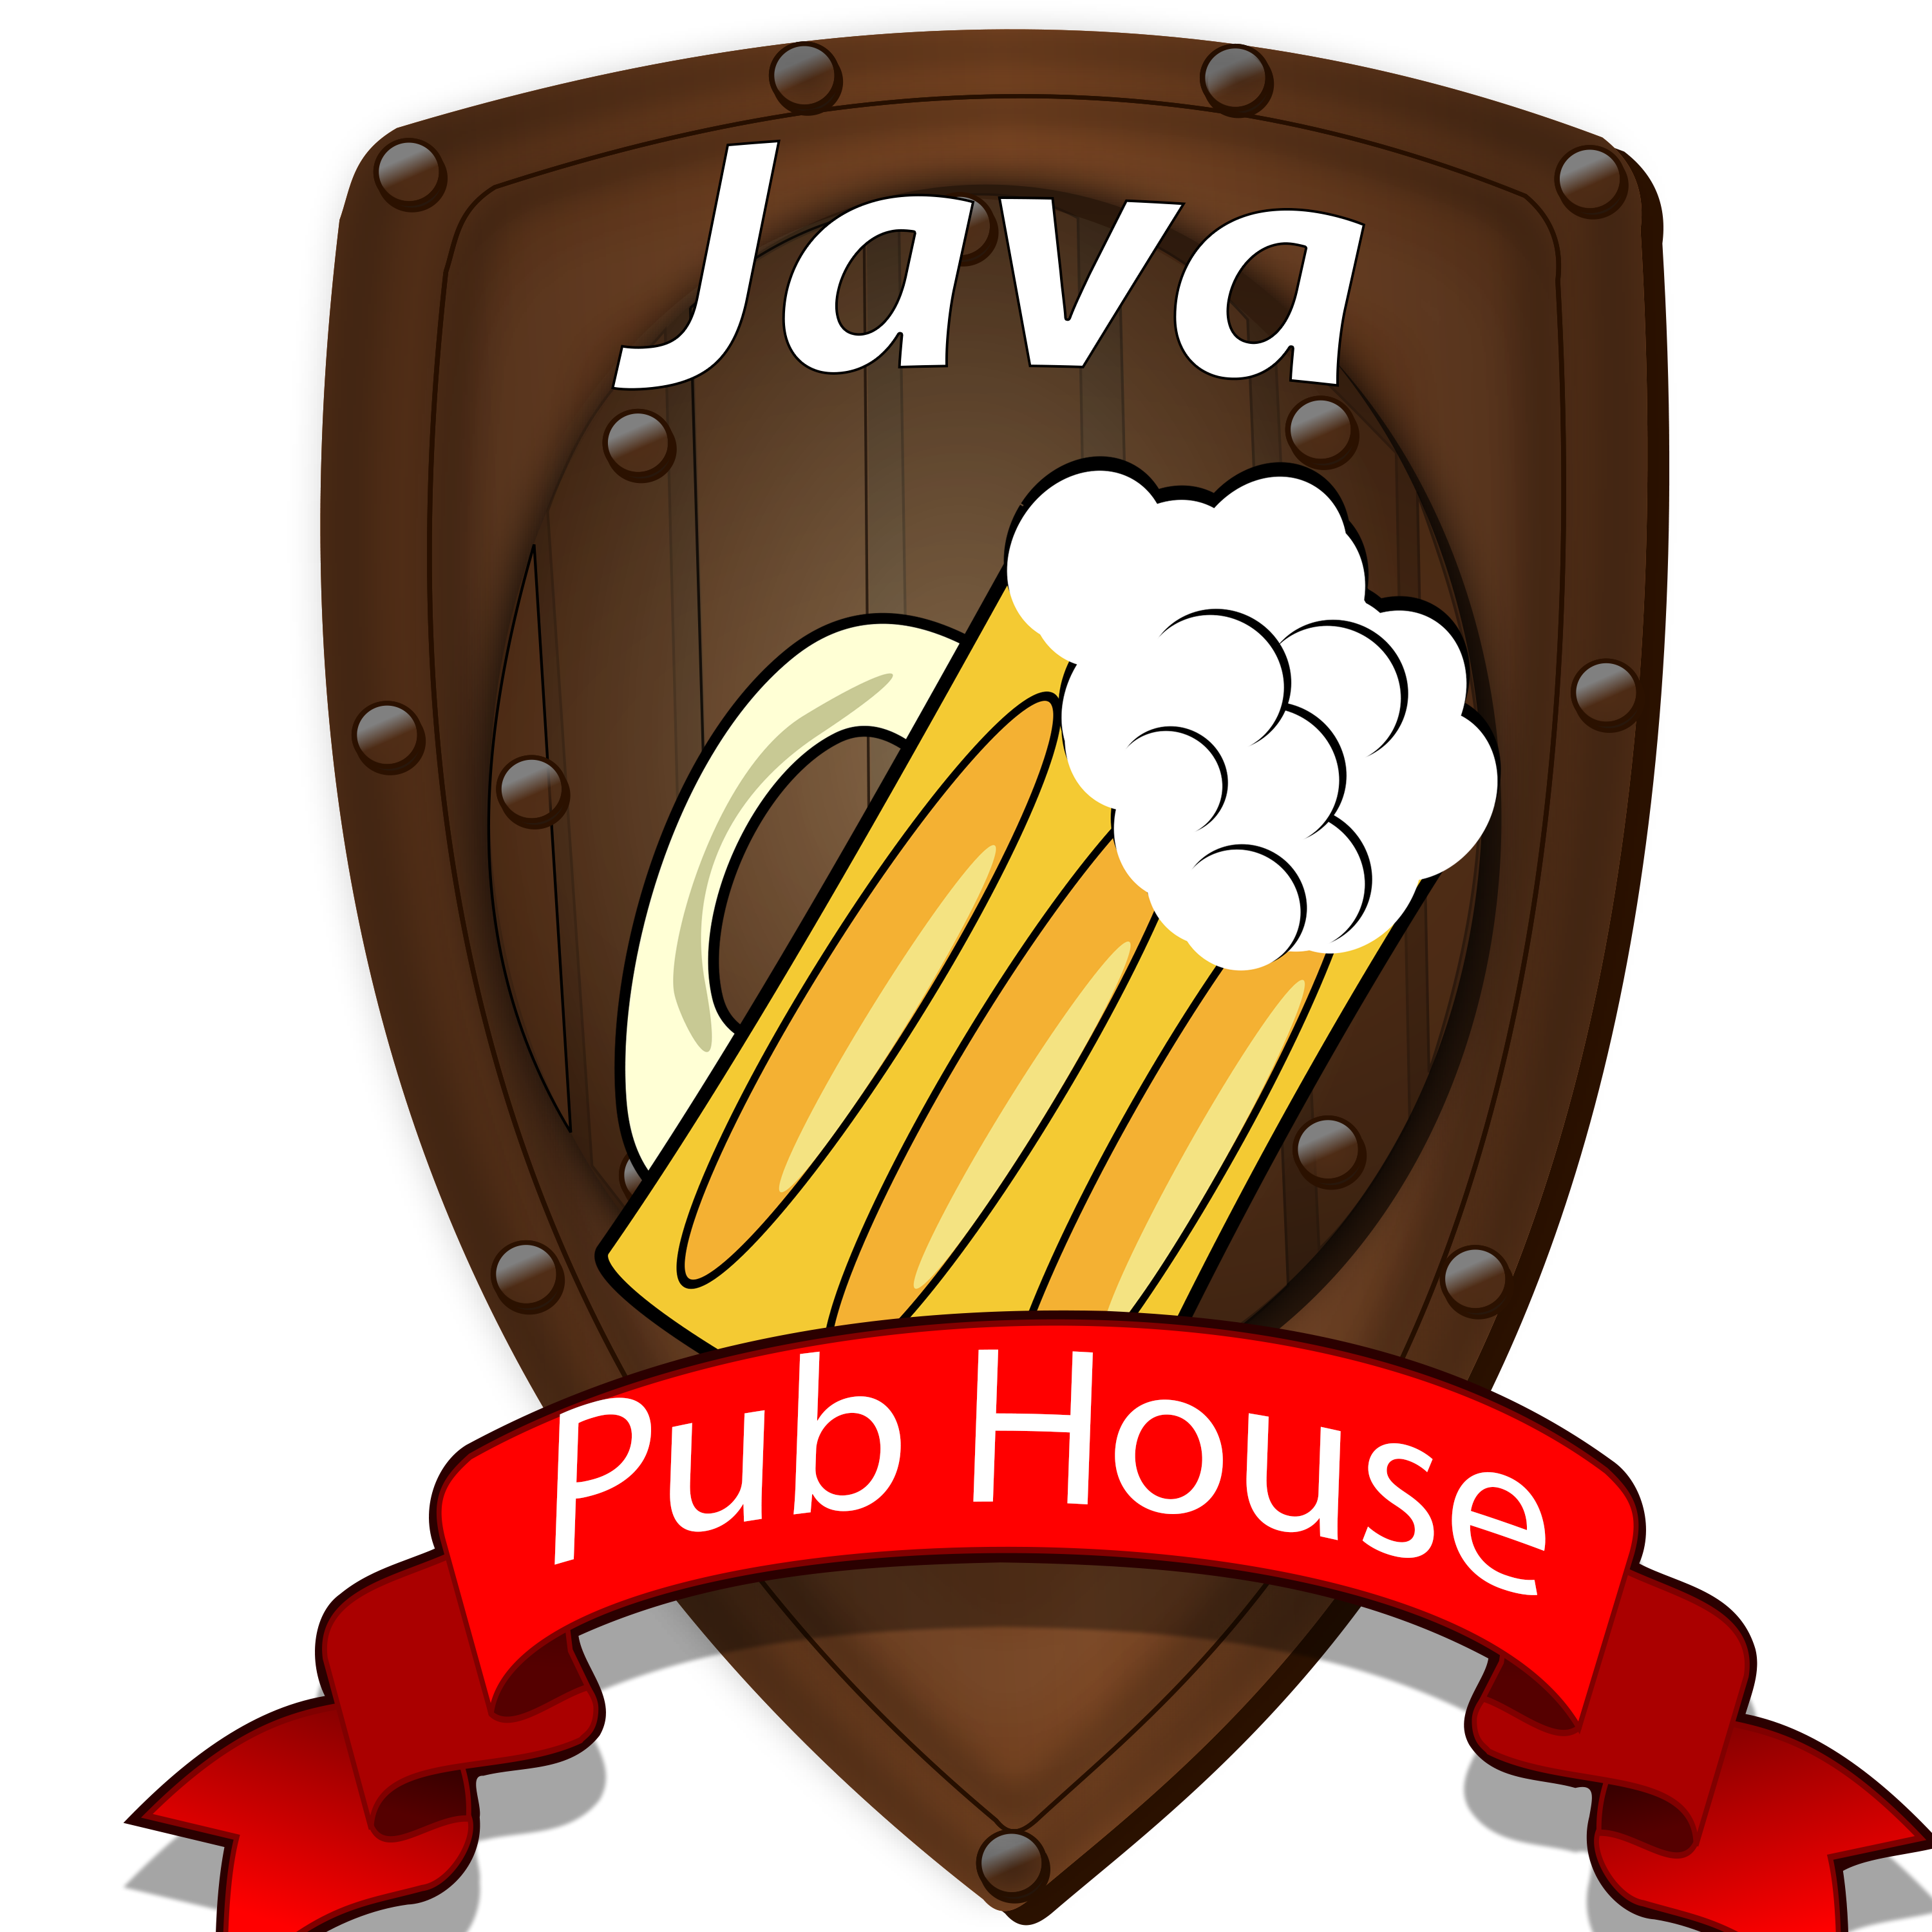 Java Pub House